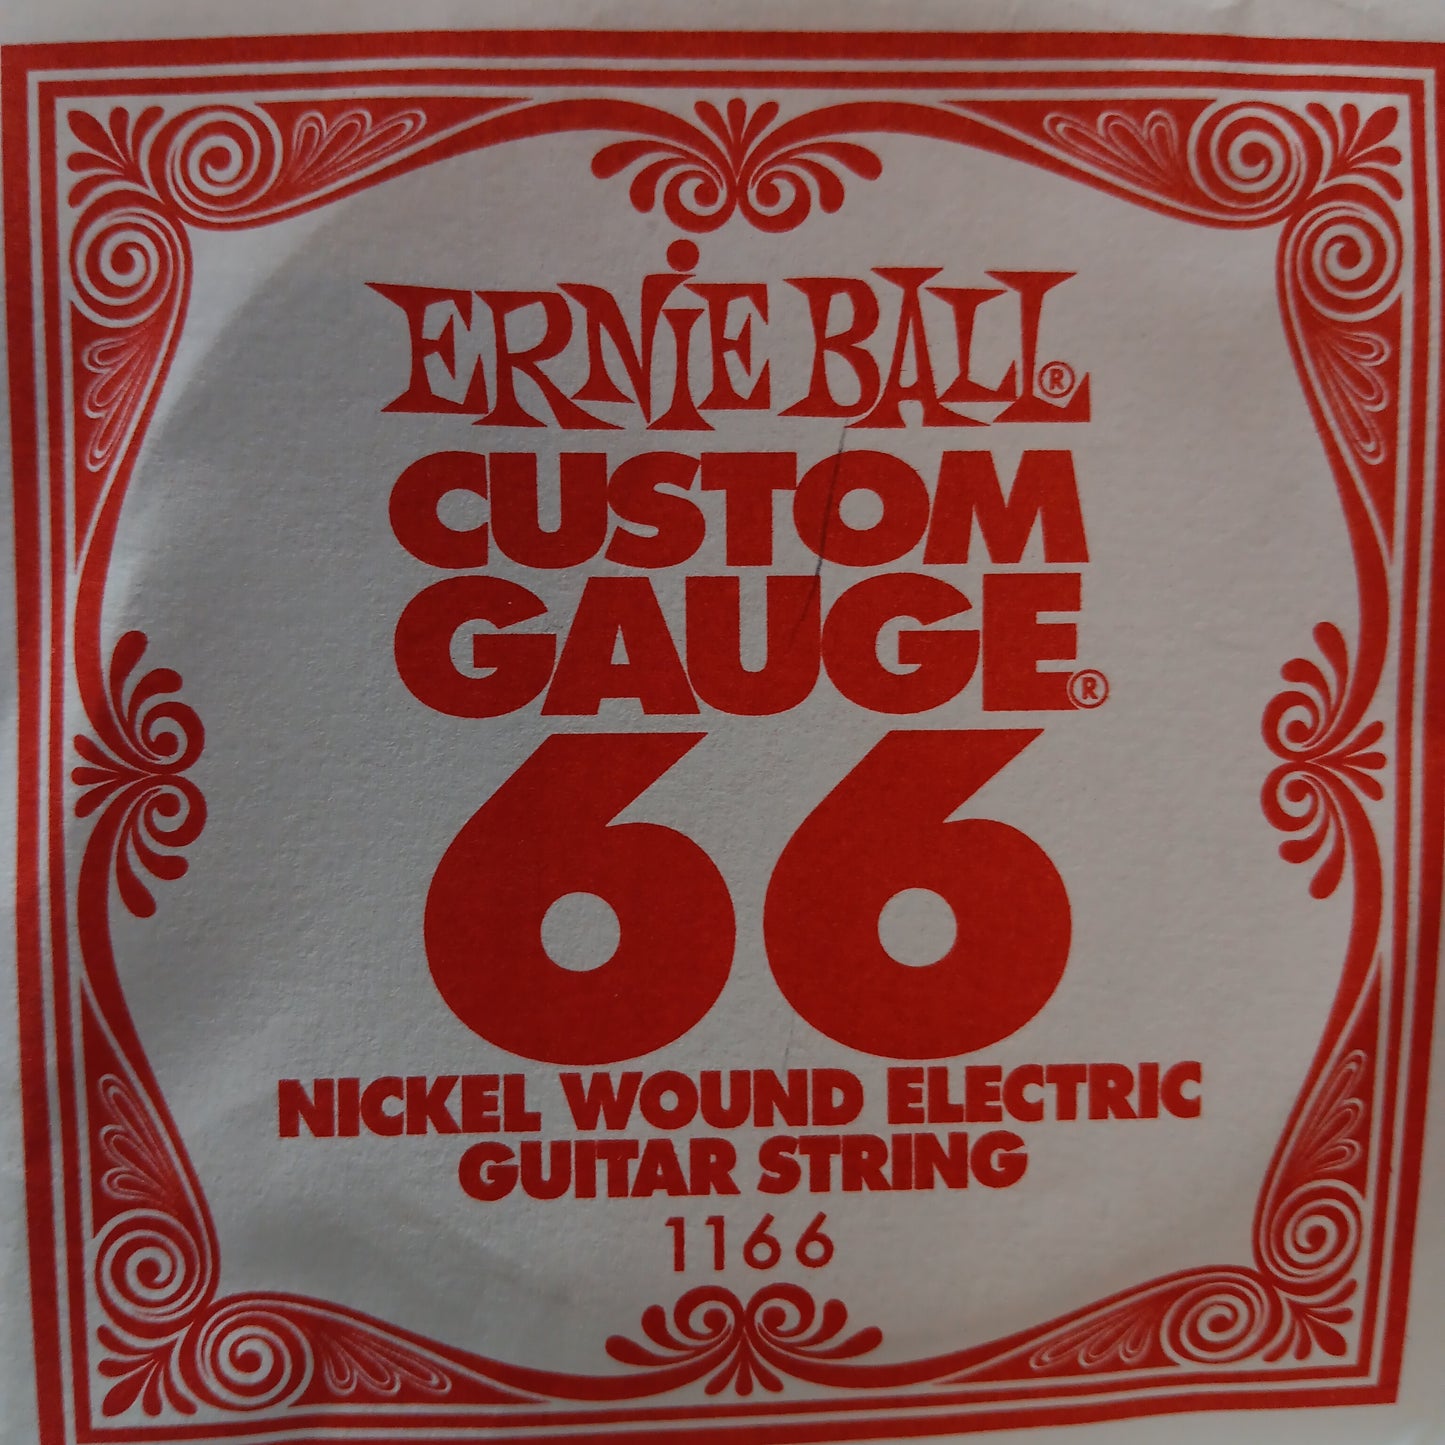 Ernie Ball Custom Gauge Nickel Wound Single Strings 1166/66
Gauge